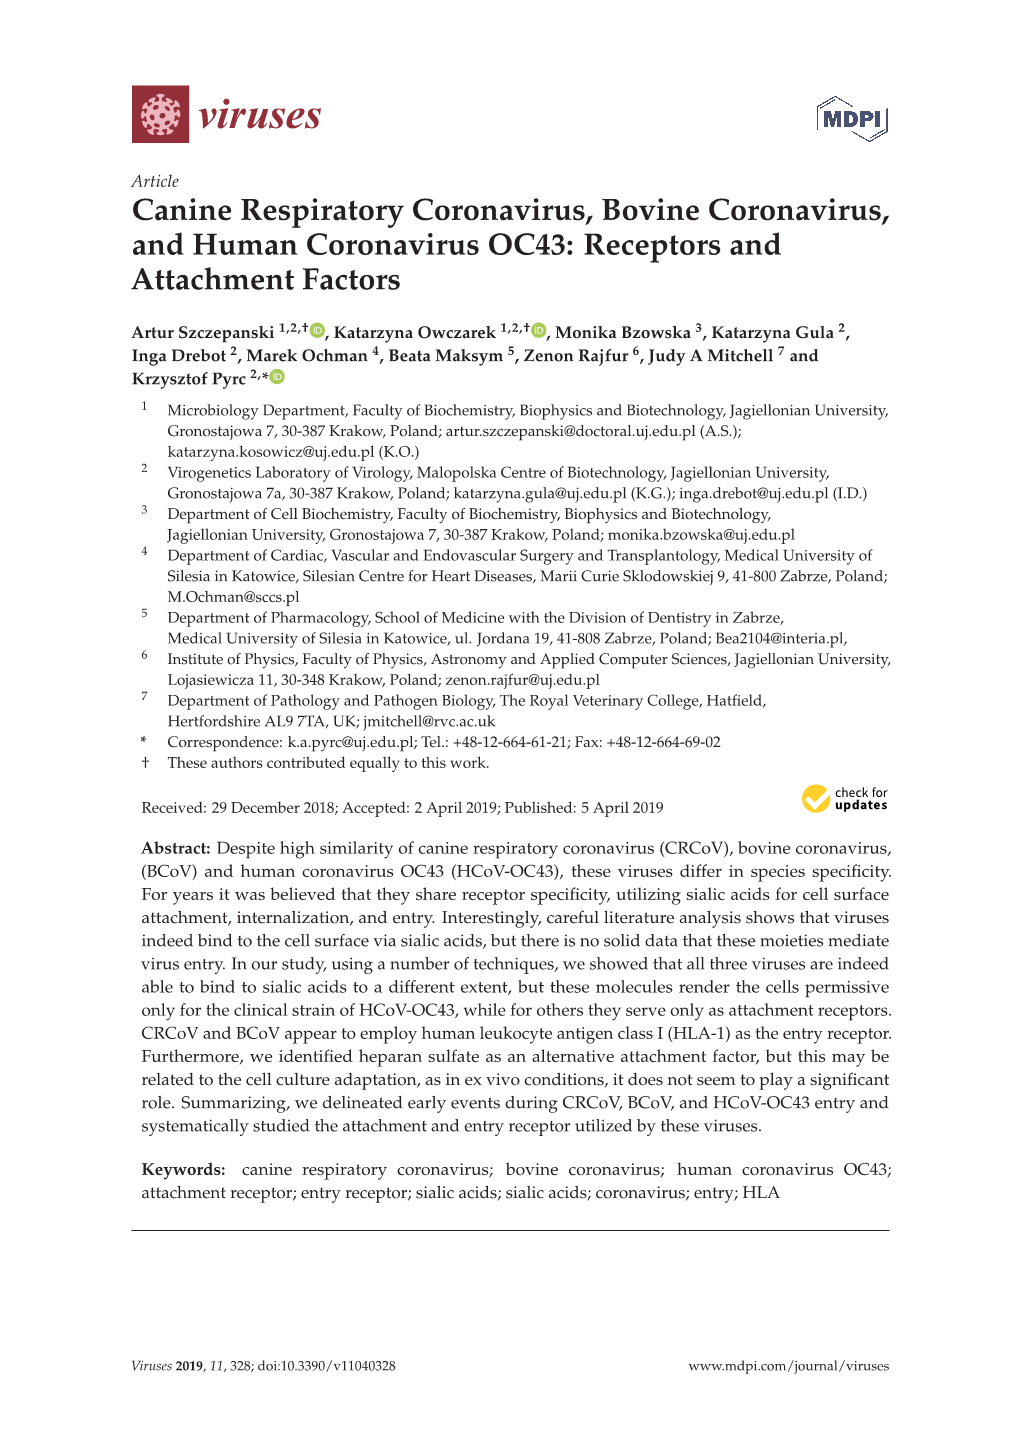 Canine Respiratory Coronavirus, Bovine Coronavirus, and Human Coronavirus OC43: Receptors and Attachment Factors